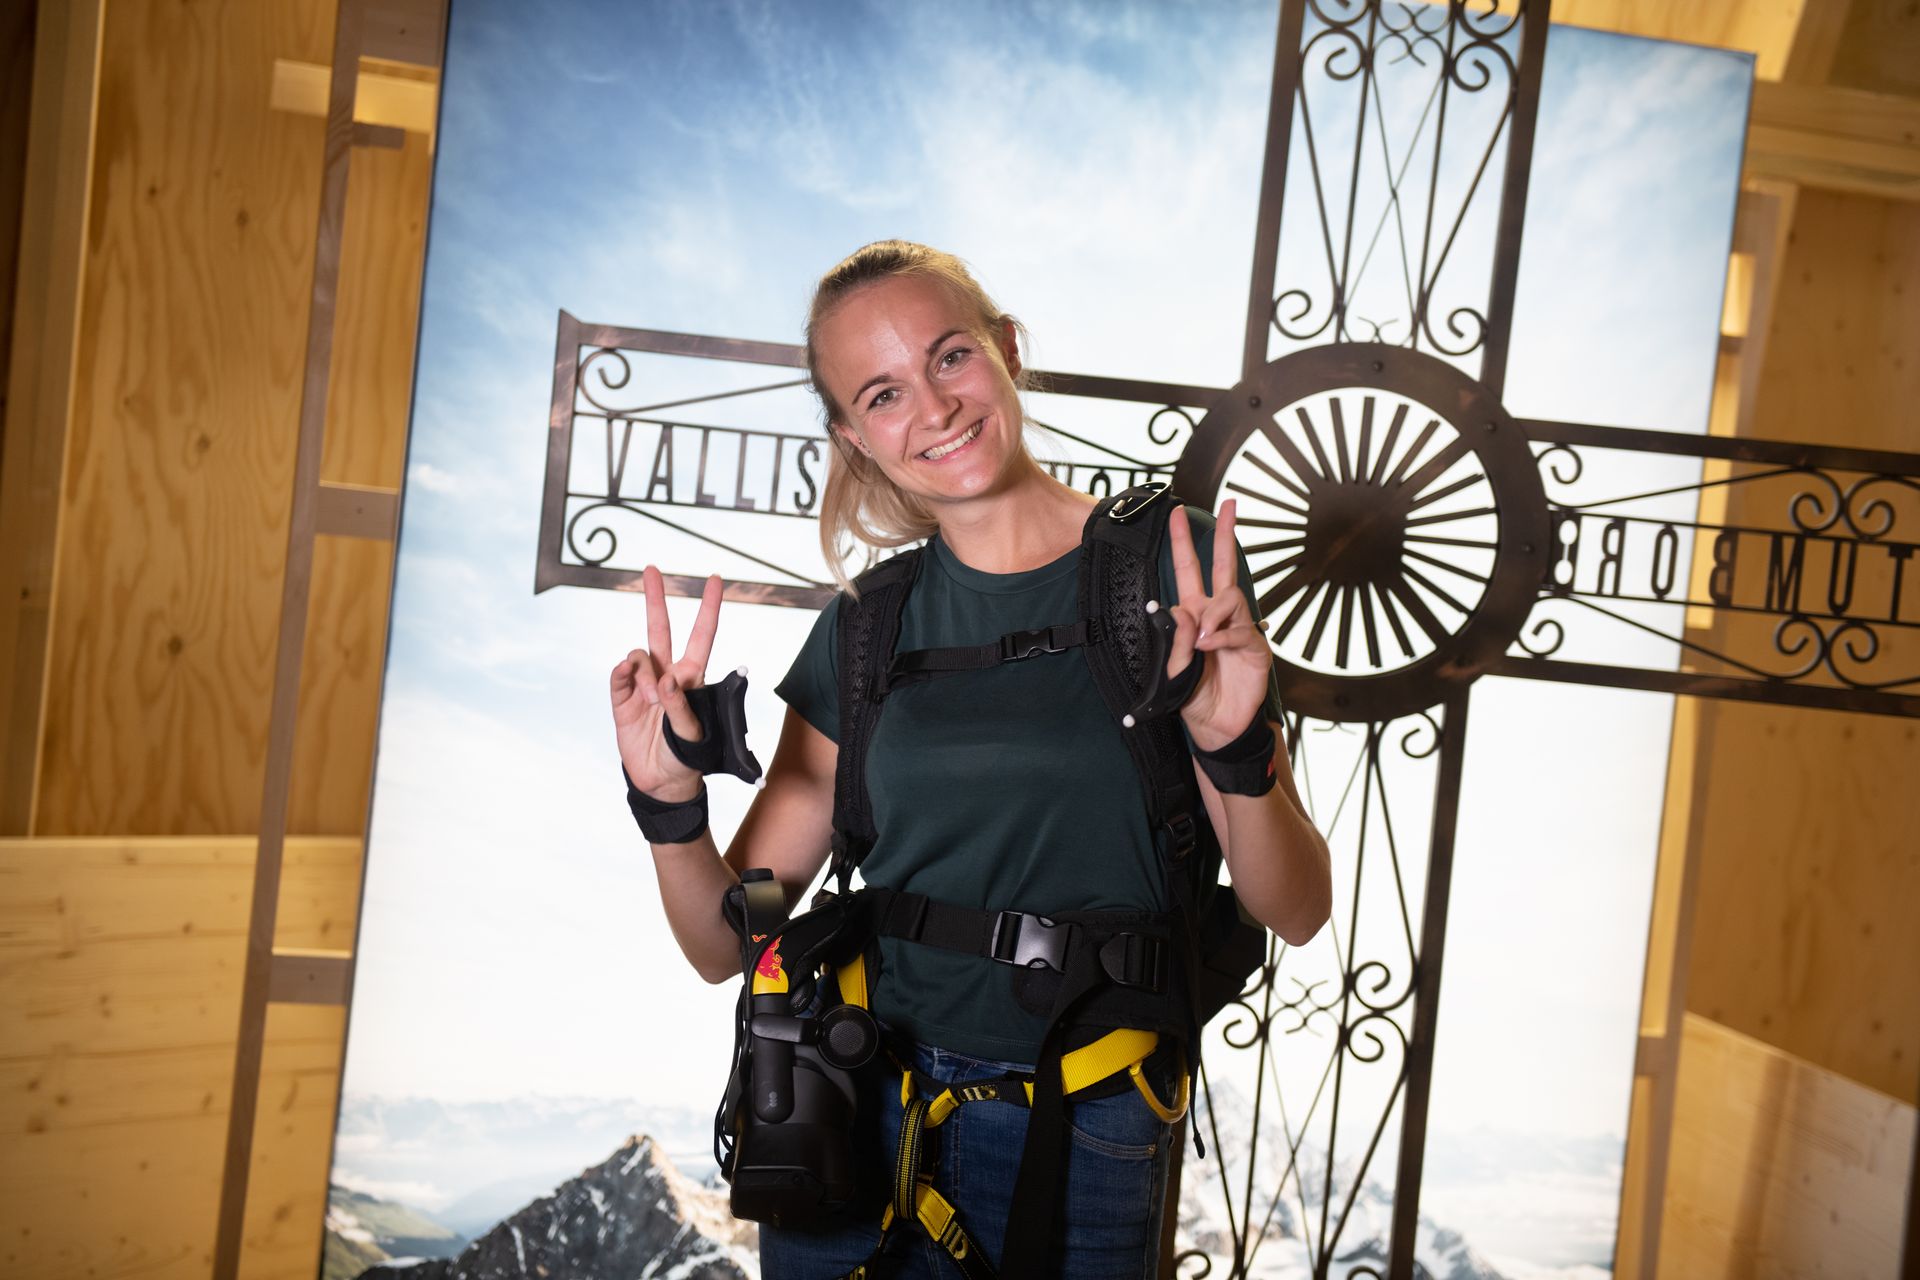 Liucernoje esančiame Šveicarijos transporto muziejuje galima virtualiai įveikti įkopimą į Materhorną, „apsiginkluotą“ virtualios realybės akiniais ir laipiojimo uolomis diržais: tai „Red Bull Switzerland“ ir įvairių partnerių iniciatyva „The Edge Matterhorn“. VR“, per kurį buvo atkartotas tikrasis Zermato kalnų gidų alpinistų Jérémie Heitz ir Sam Anthamatten kopimas, taip pat suteikiant 4D vėjo, vibracijų, tekstūrų ir daugybės objektų ar scenos elementų.